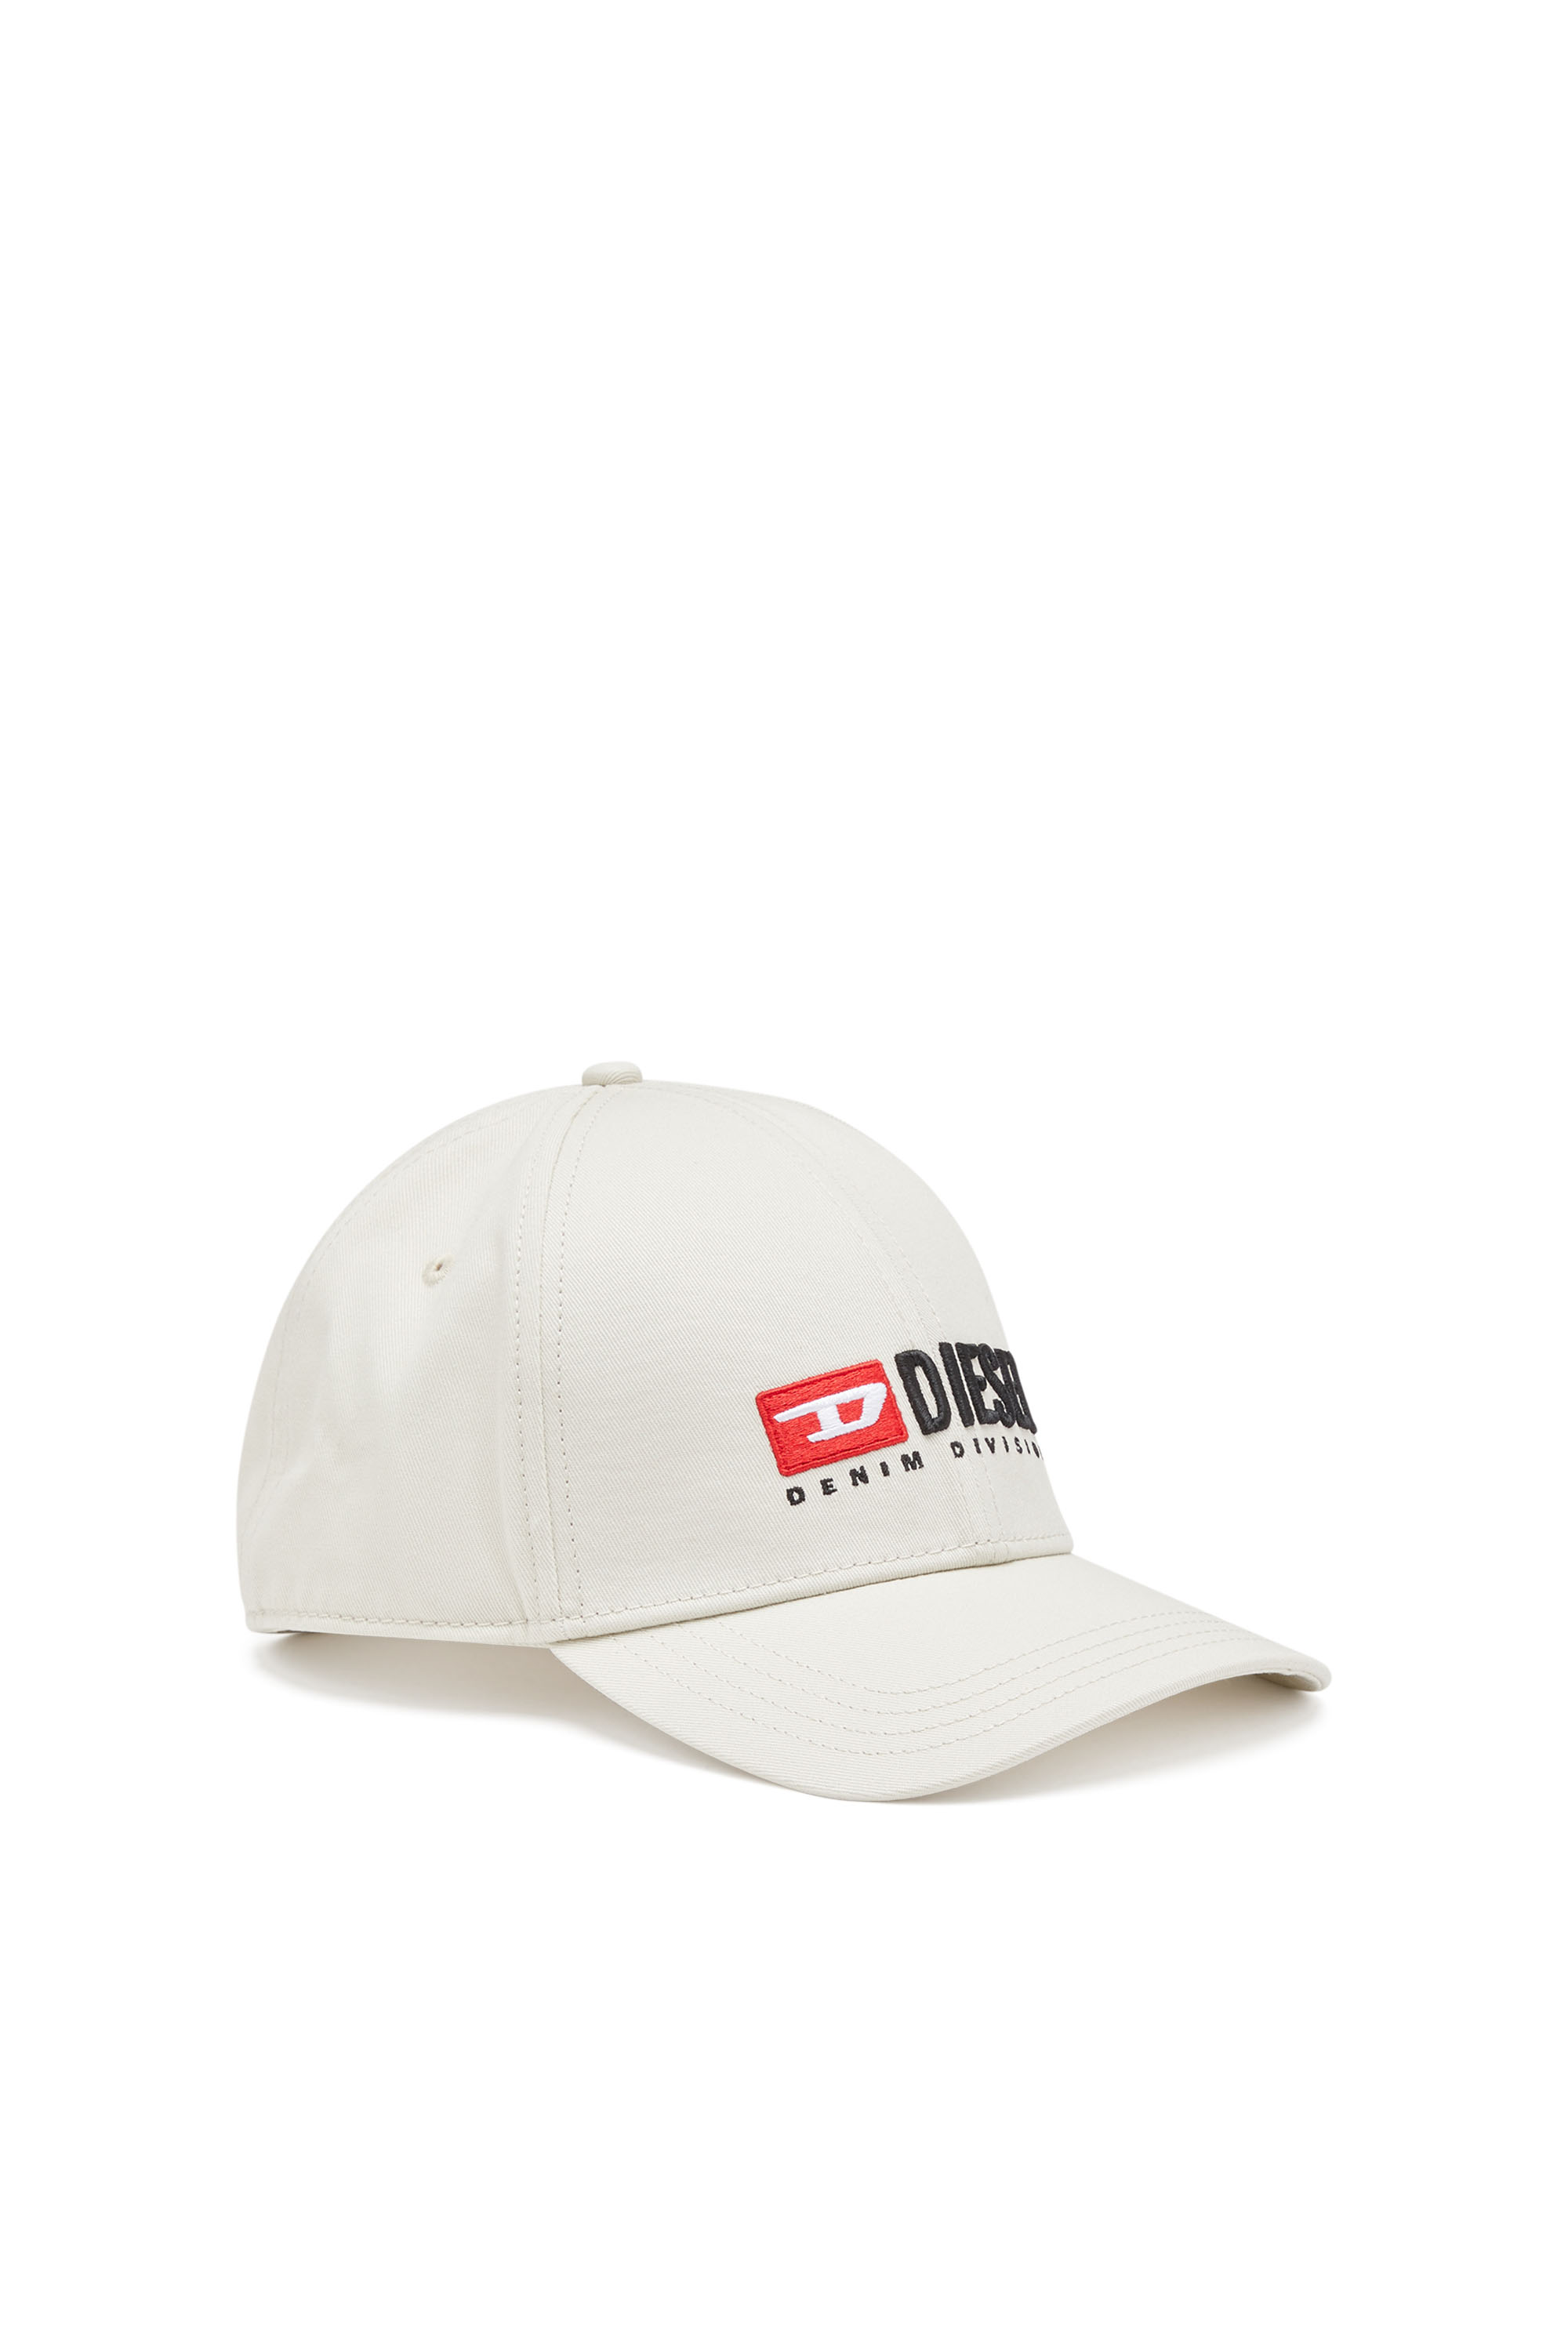 【新品】DIESEL ディーゼル C-Seymon デニム ロゴ キャップ 帽子メンズ